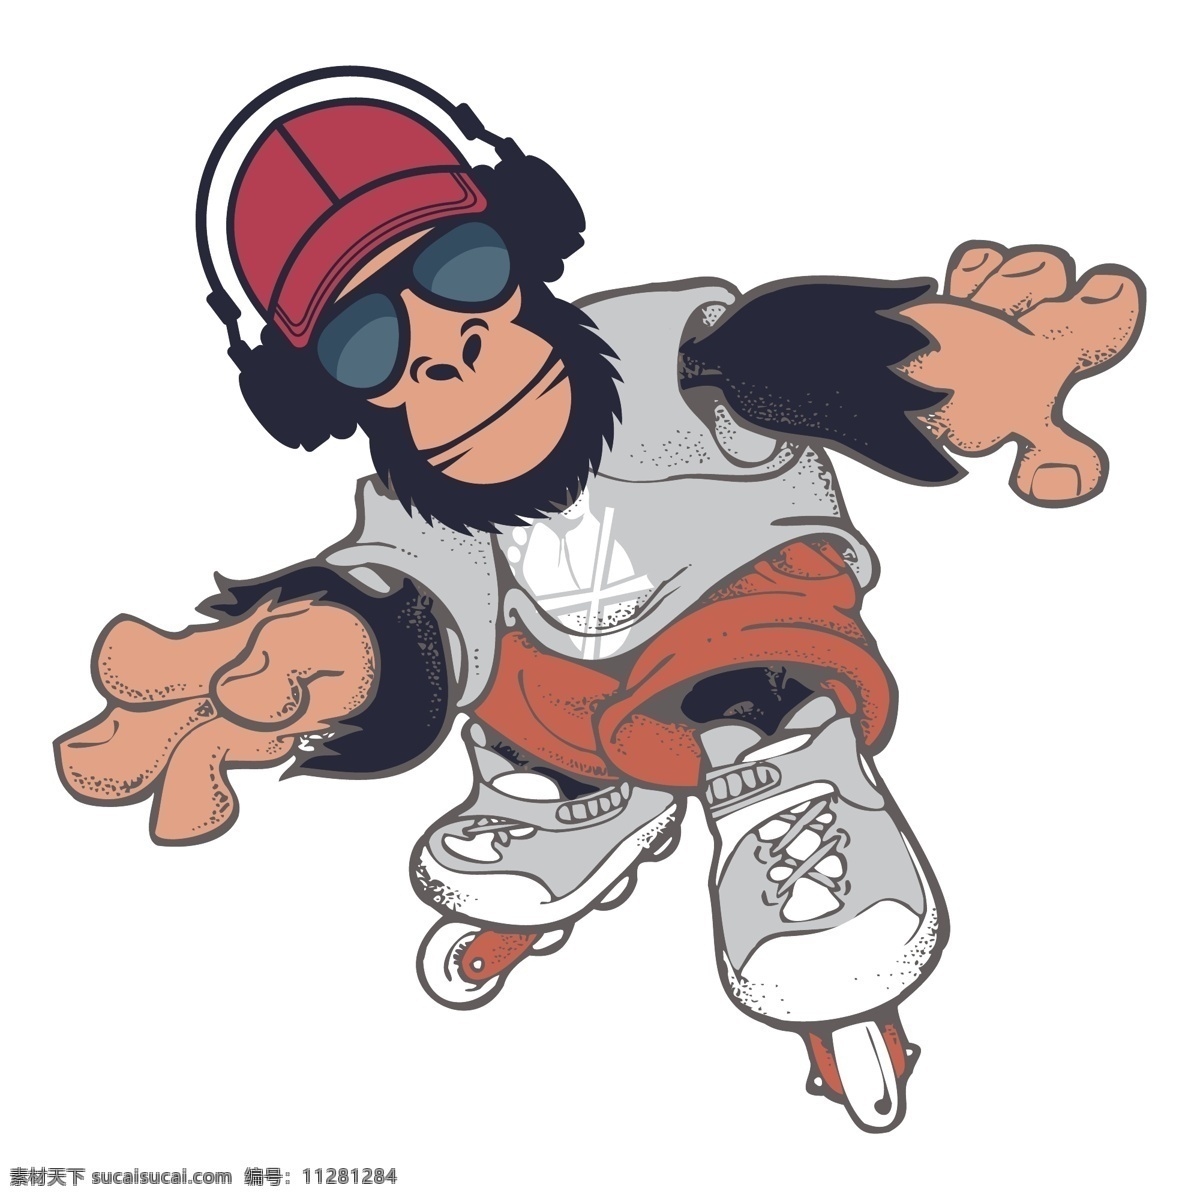 运动 嘻哈 风 大猩猩 跳舞 滑板 动漫动画